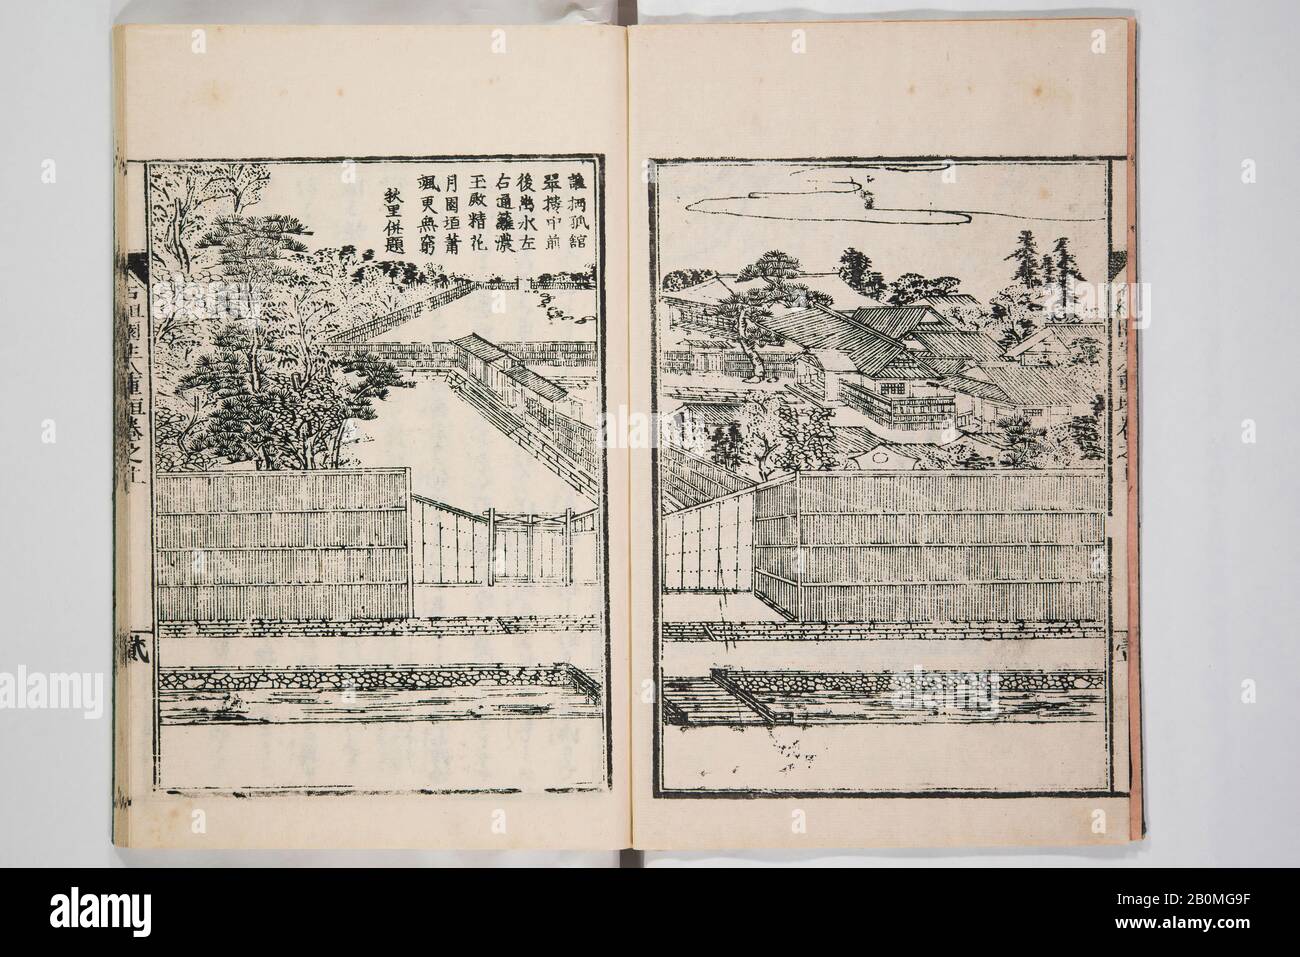 Mishōsai Kōho, Illustriertes Buch der Blumenarrangements im Mishō-Stil, Japan, Edo (1615-Shôwa)-Mishōsai Kōho-Zeit (1926-89), × (Japanisch, 170-1861), möglicherweise 1931, Japan, Monochrom-Holzschnitt gedrucktes Buch, A: 8 5/8 × 5 7/8   1/4 Zoll. (21,9 × 14,9 × 0,6 cm), b: 8 5/8 × 5 7/8 × 3/16 Zoll (21,9 × 14,9 × 0,5 cm), c: 9 × 6 3/16 × 1/4 Zoll (22,9 × 15,7 × 0,6 cm), d: 9 × 6 × 1/4 Zoll (22,9 × 15,2 × 0,6 cm), e: 9 × 6 × 1/4 Zoll (22,9 × 15,2 × 0,6 cm), f: 10 × 7 1/4 × 3/8 Zoll (25,4 × 18,4 × 1 cm), g: 10 × 7 1/4 × 3/8 Zoll (25,4 × 18,4 × 1 cm), h: 10 × 7 1/8 × 3/8 Zoll (25,4 × 18,1 × 1 cm), i: 10 1/ Stockfoto